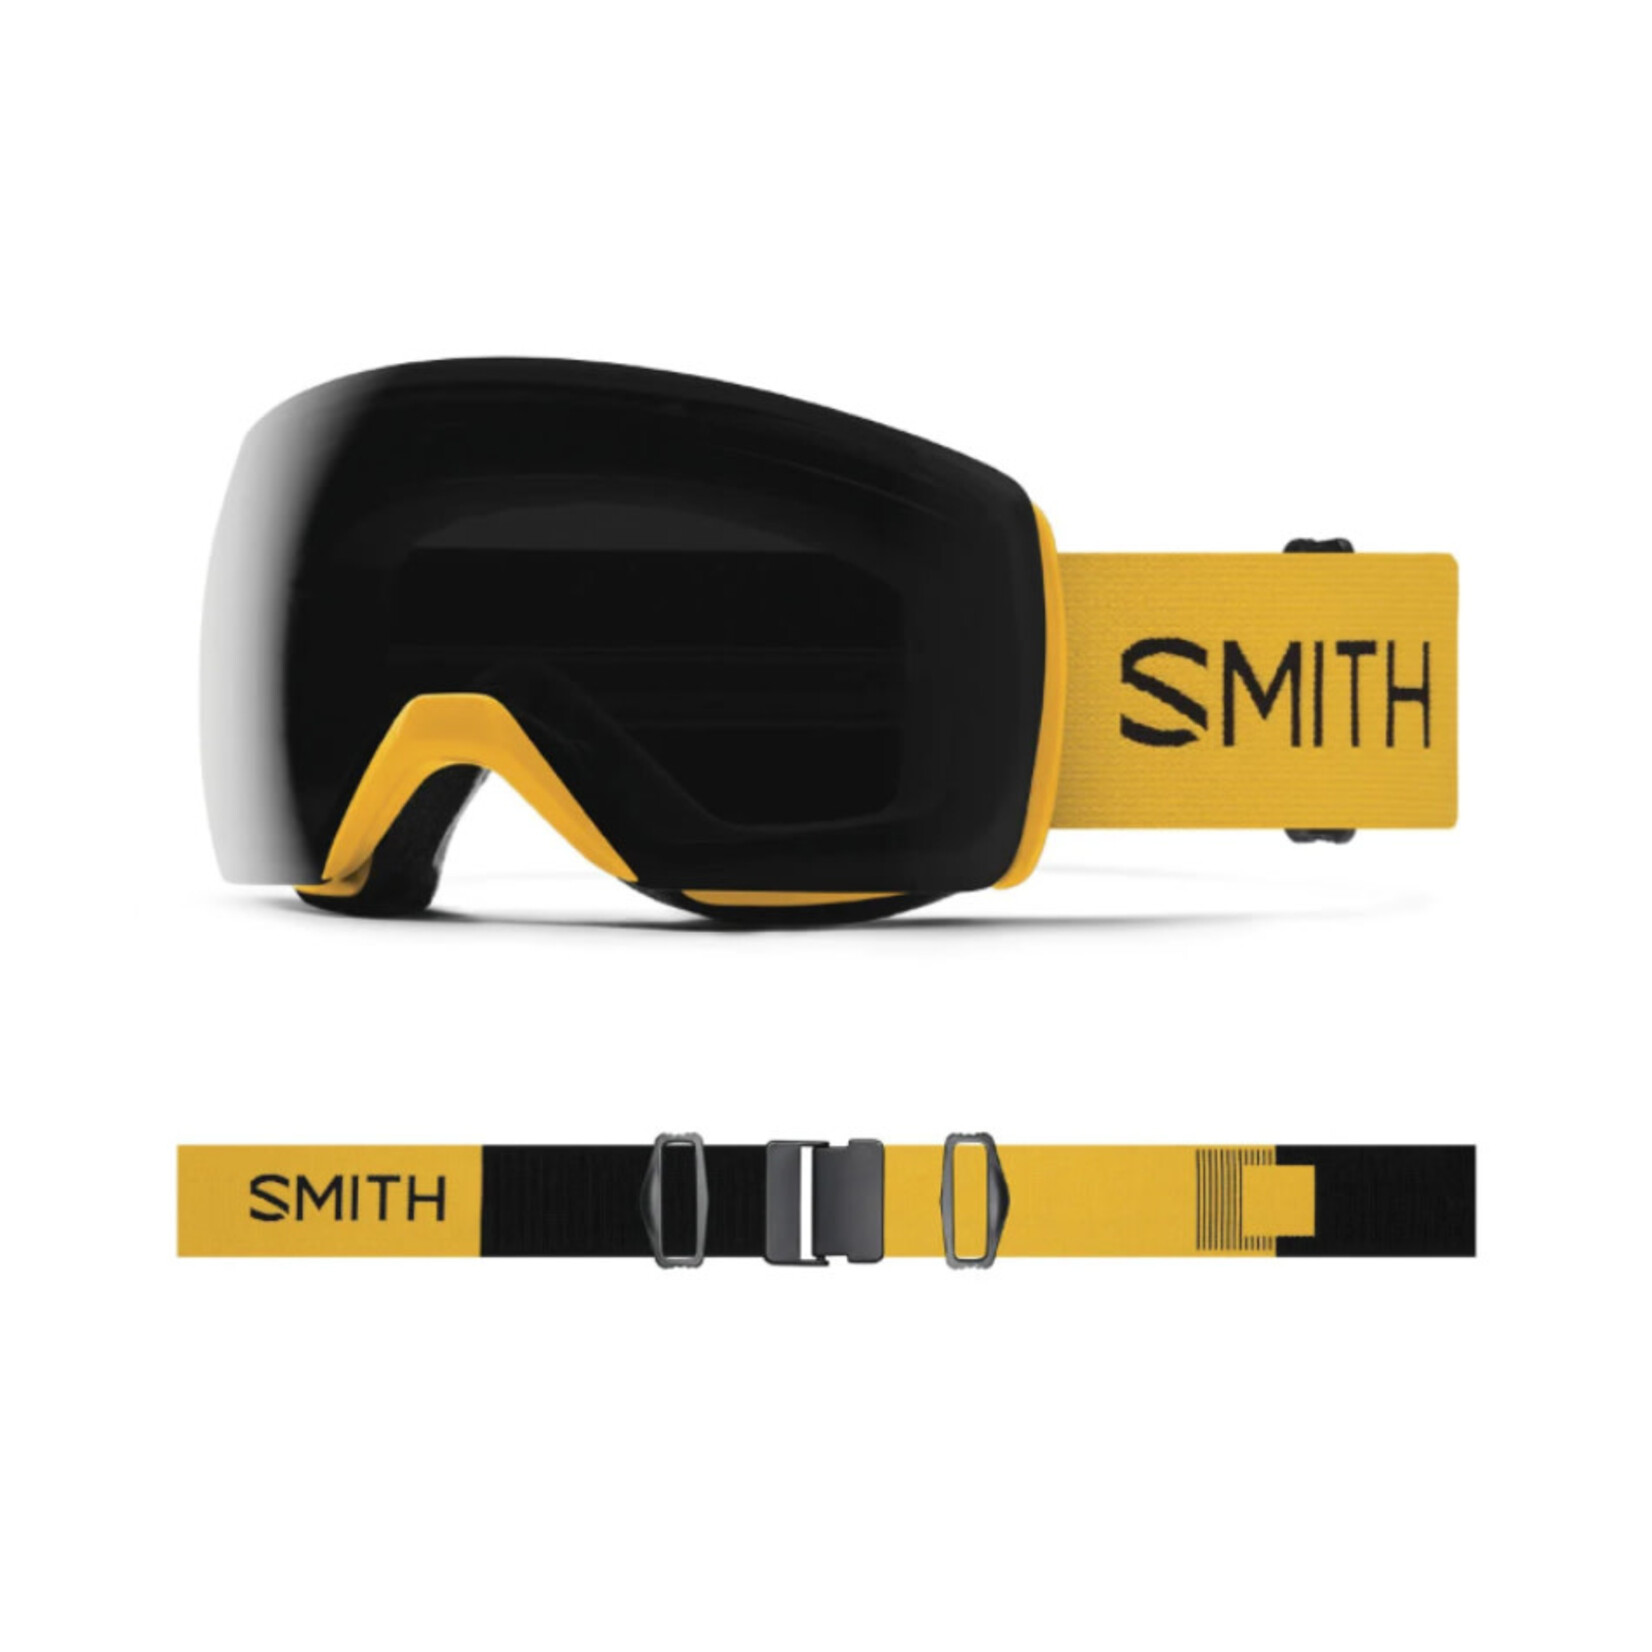 Smith Optics Skyline XL